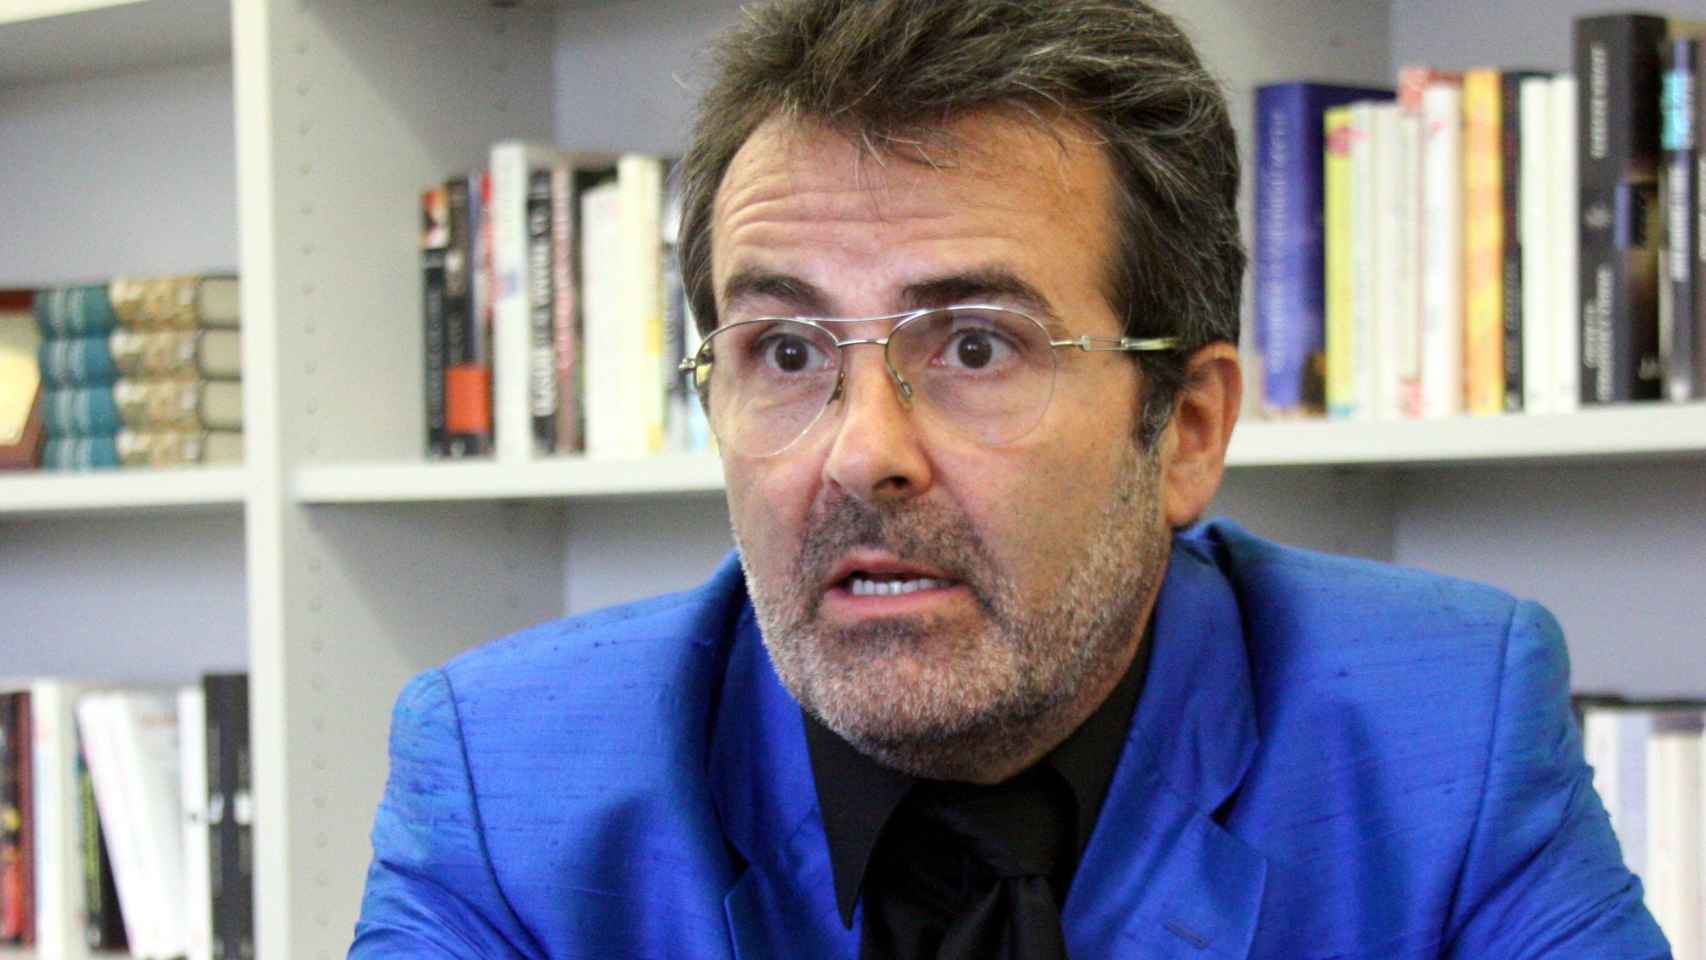 El economista Sala i Martin, que se ha criticado duramente al Ayuntamiento de Barcelona, durante una entrevista / EFE